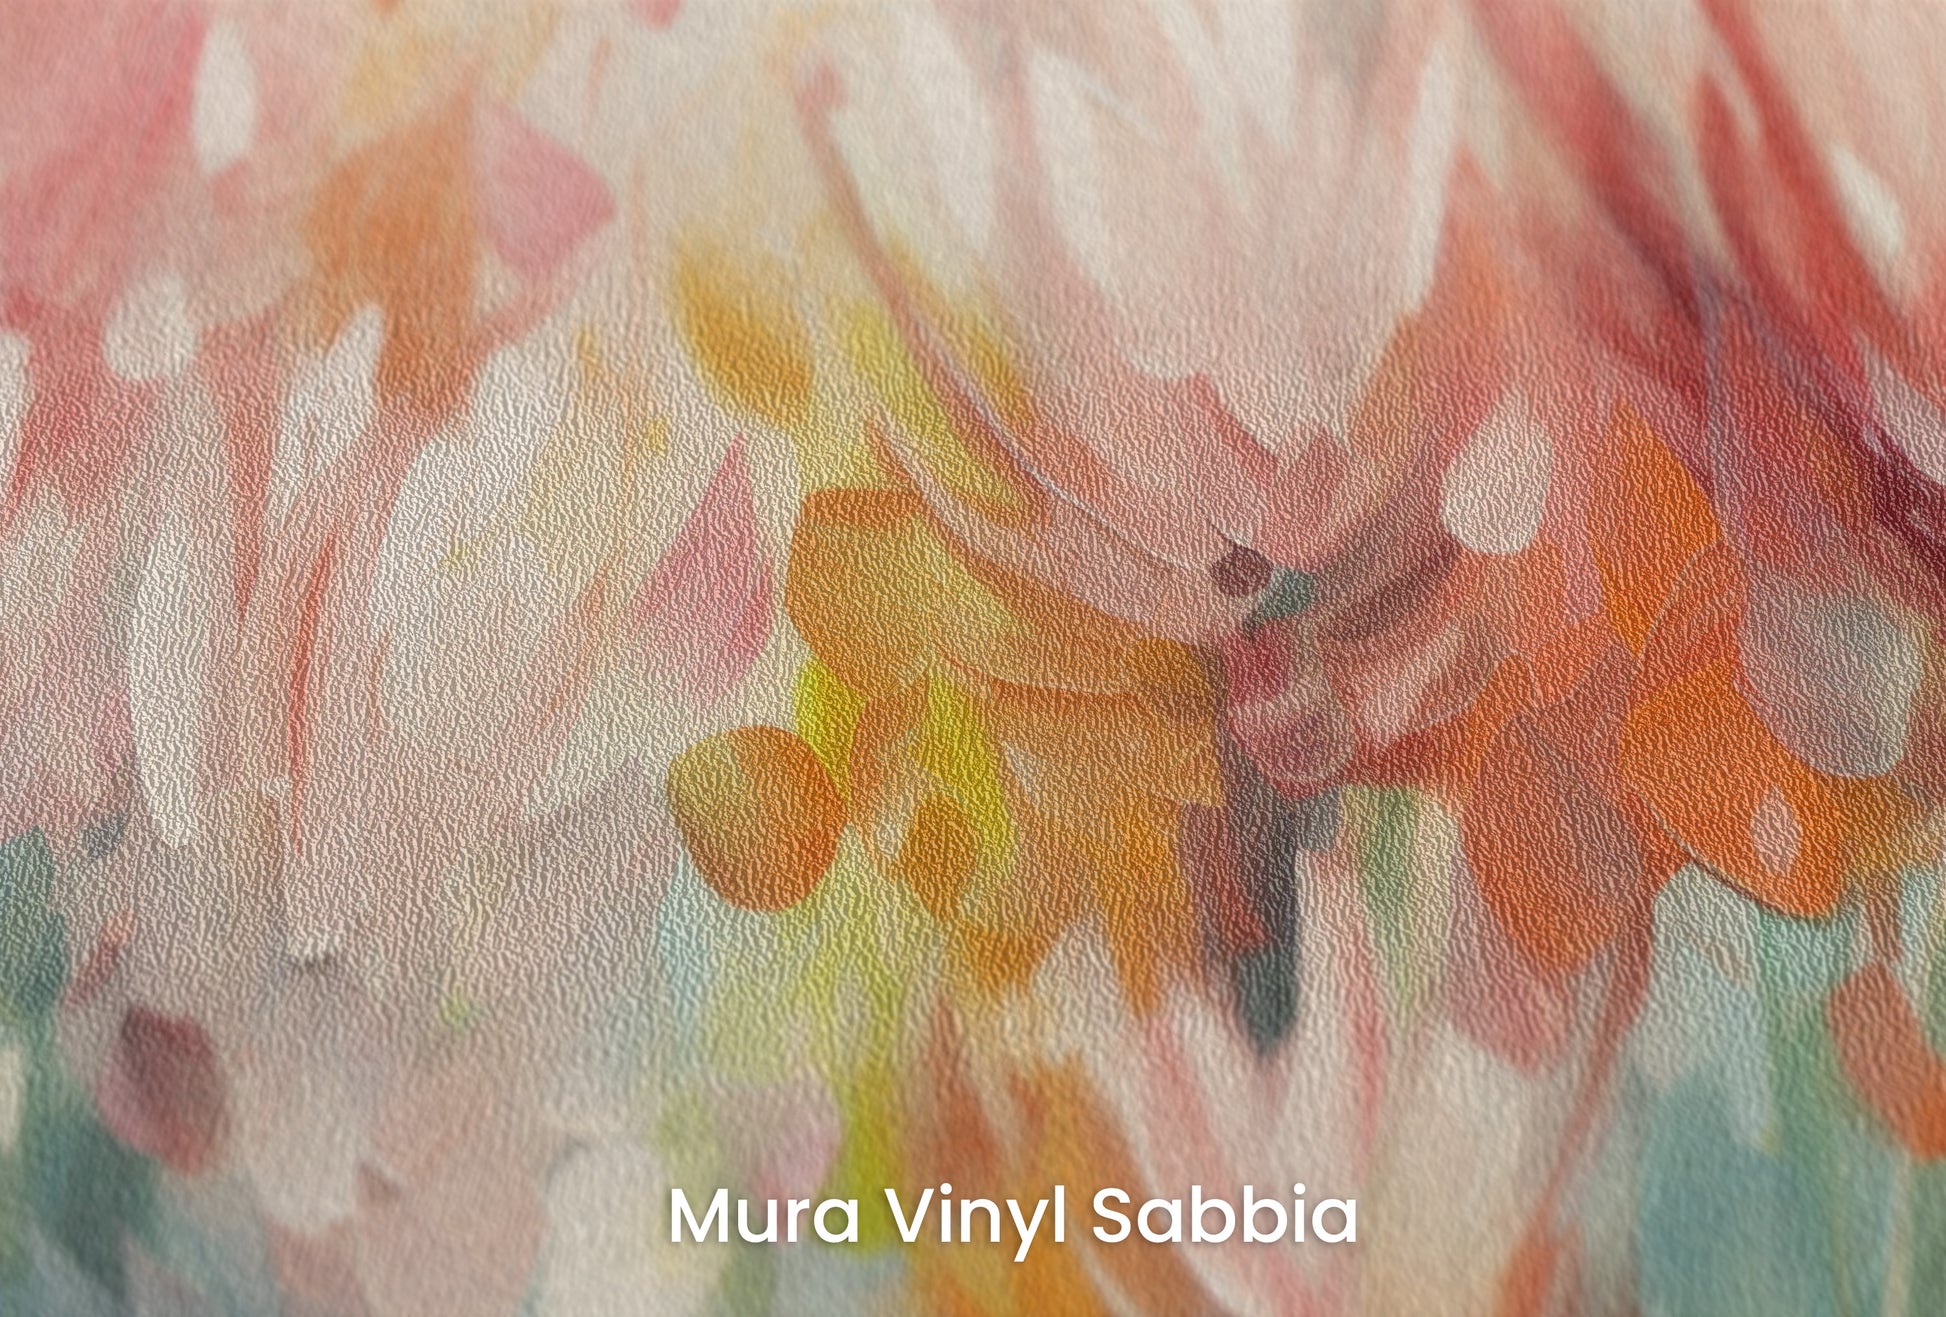 Zbliżenie na artystyczną fototapetę o nazwie Floral Burst na podłożu Mura Vinyl Sabbia struktura grubego ziarna piasku.